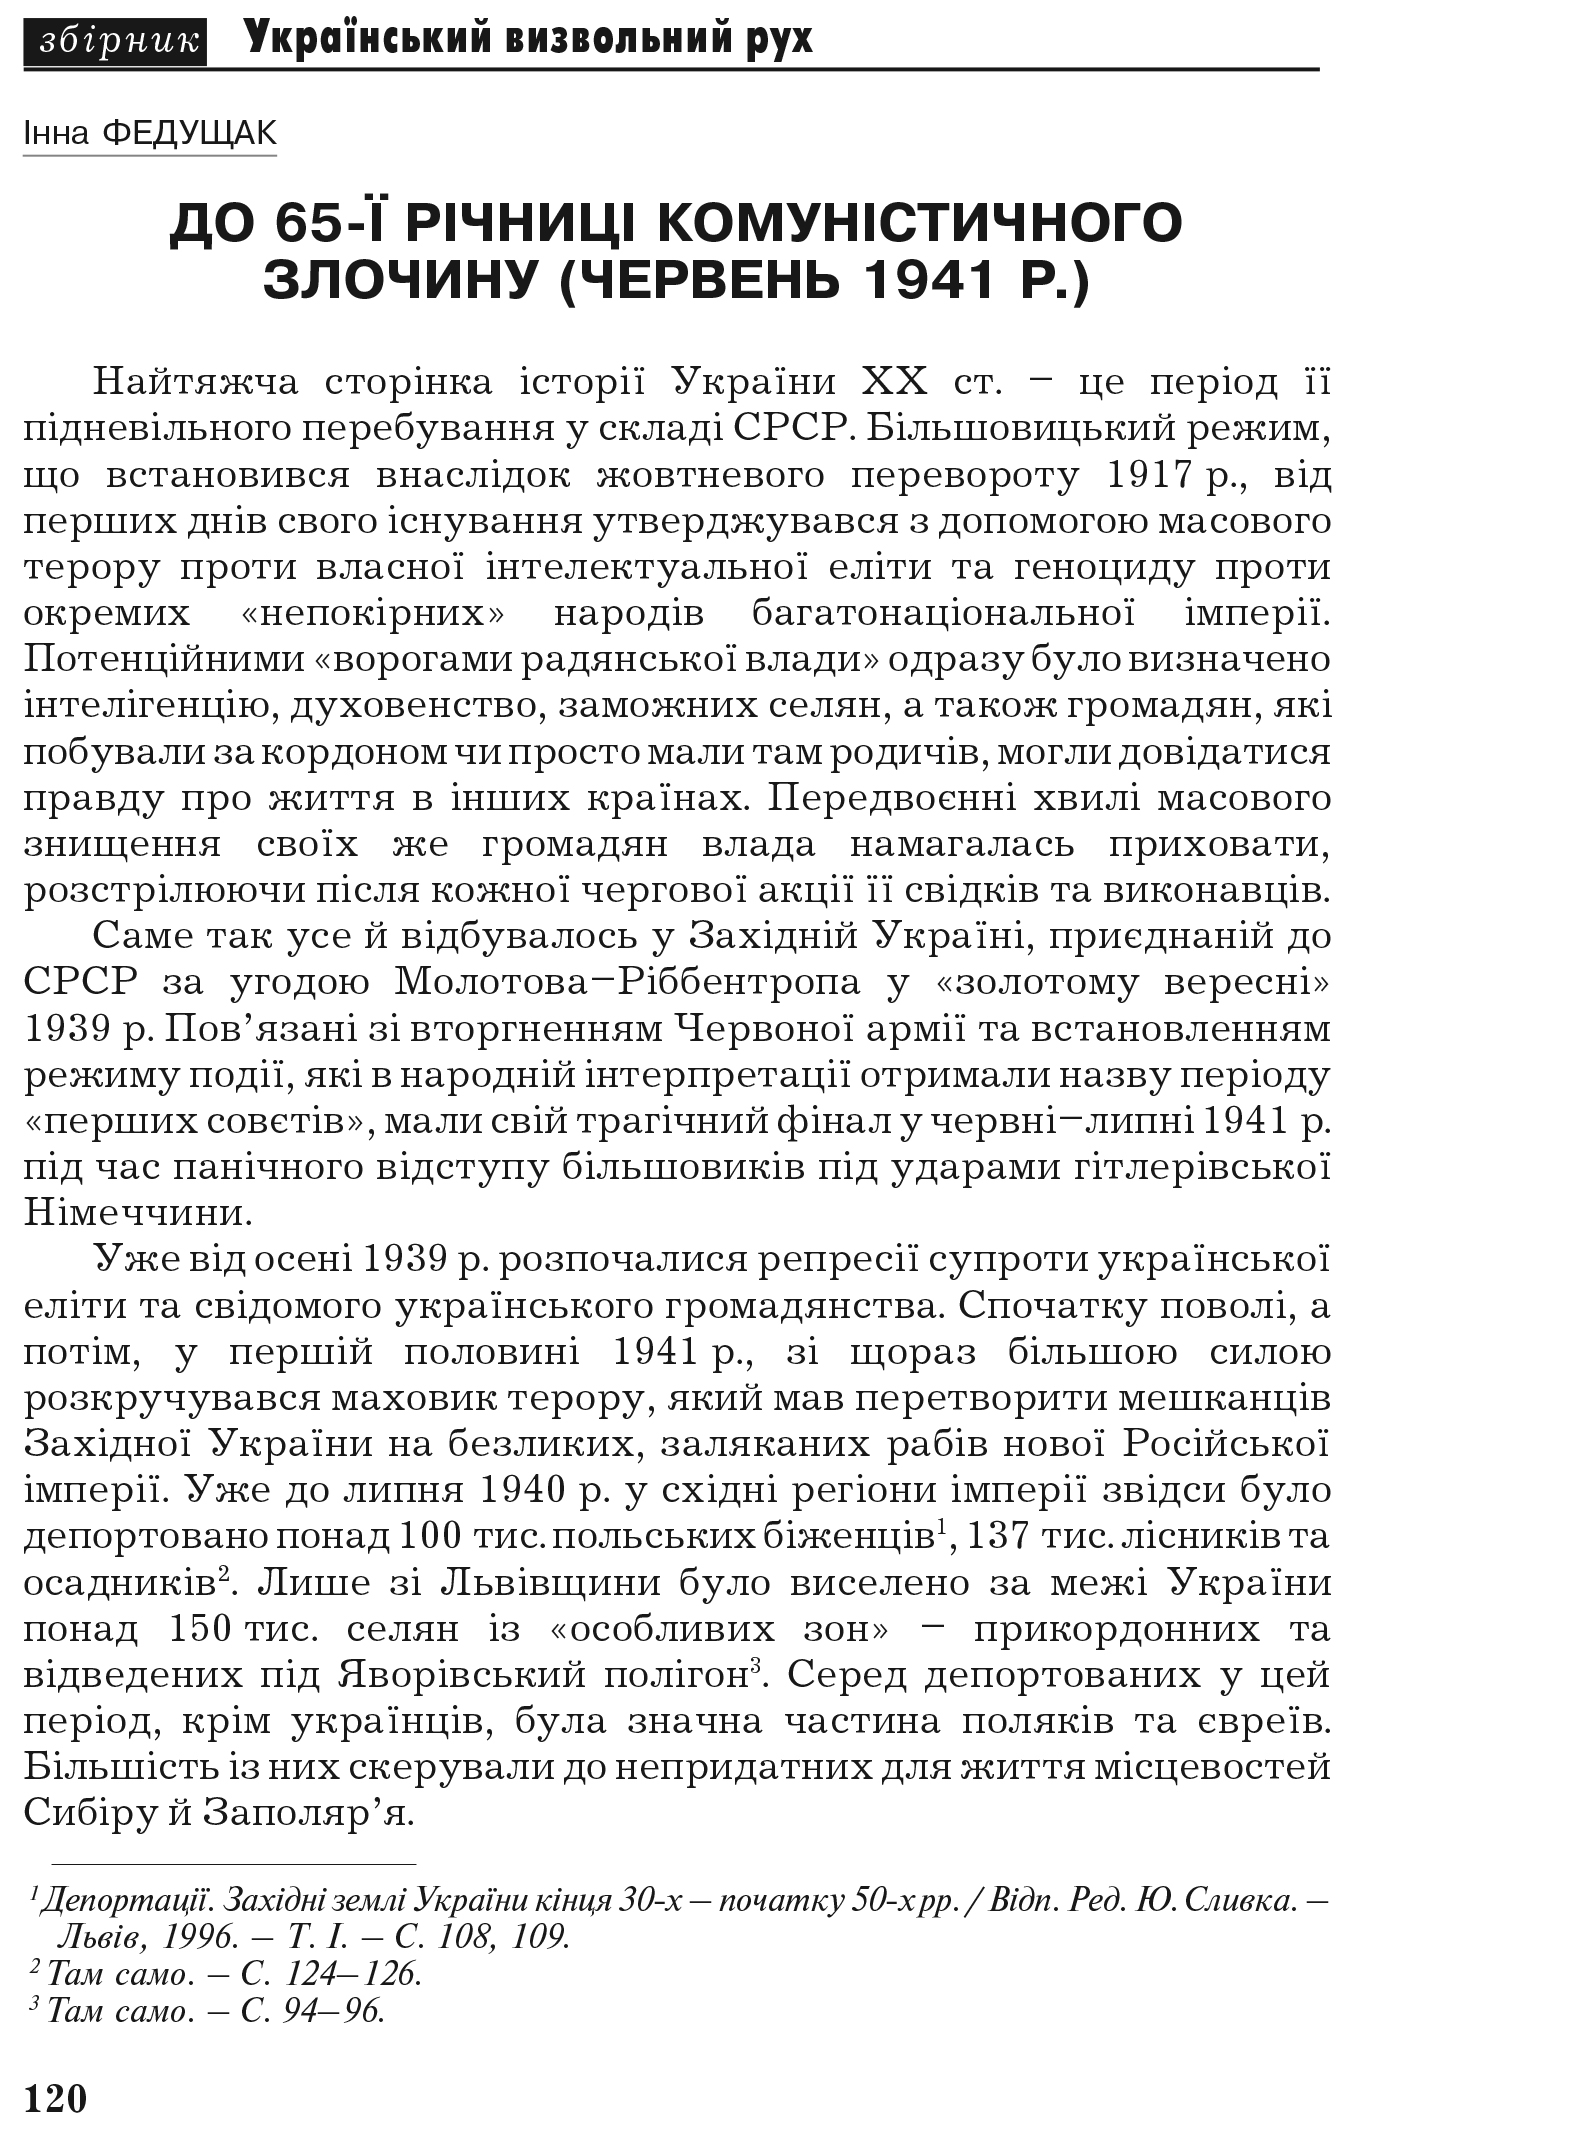 Український визвольний рух №7, ст. 120 - 154